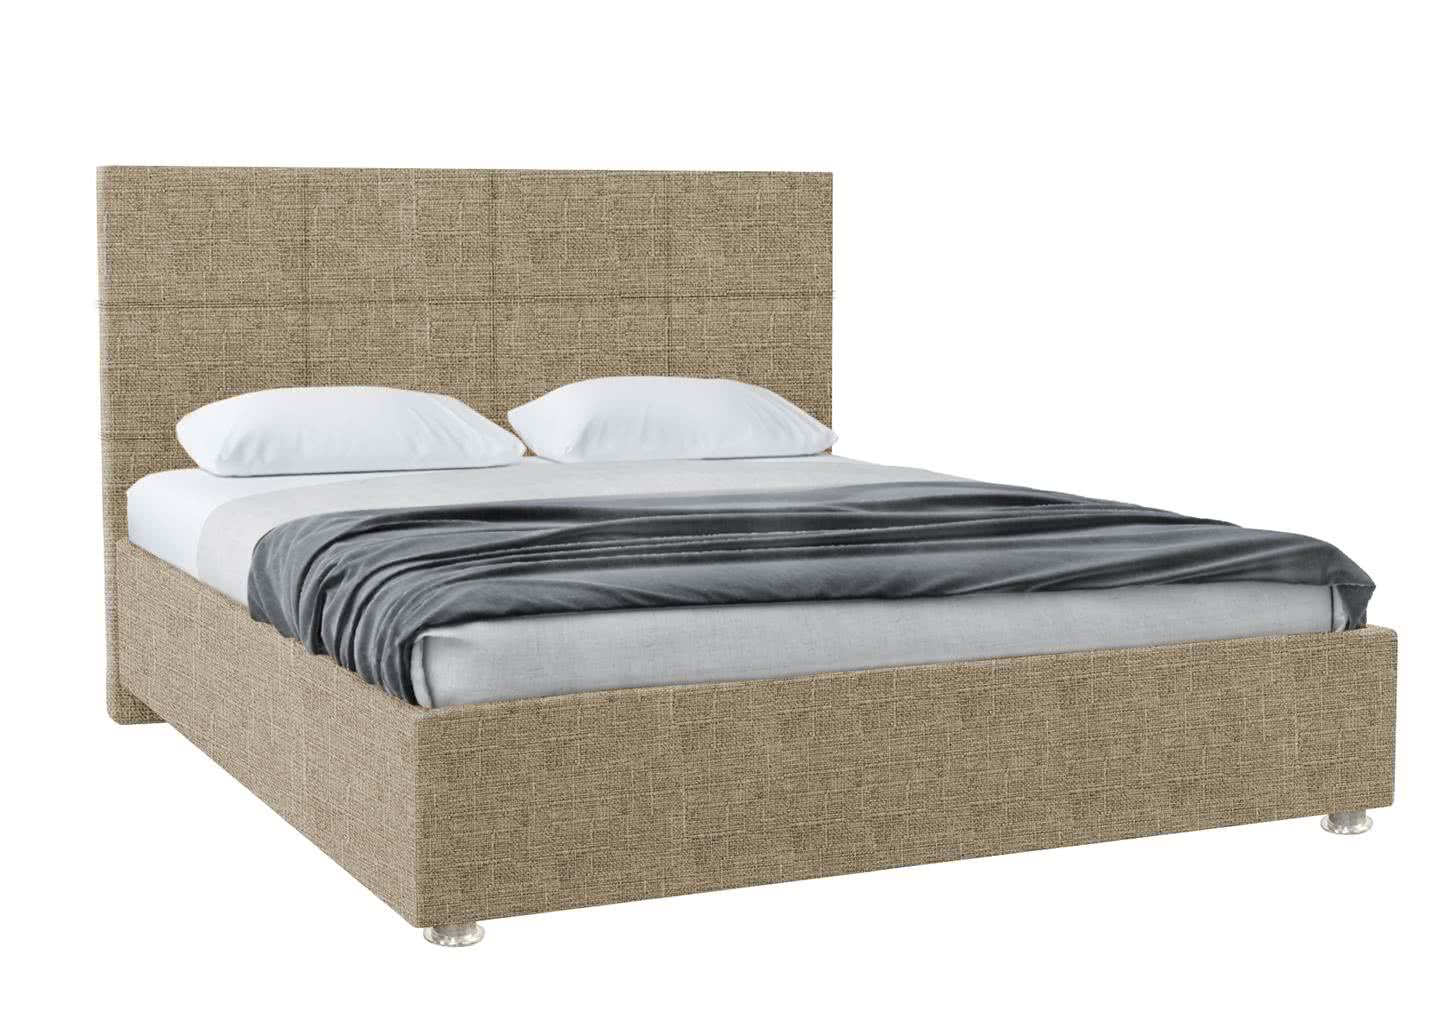 Кровать Promtex Атнес 140 х 200 см Mikki sand (рогожка) - распродажа